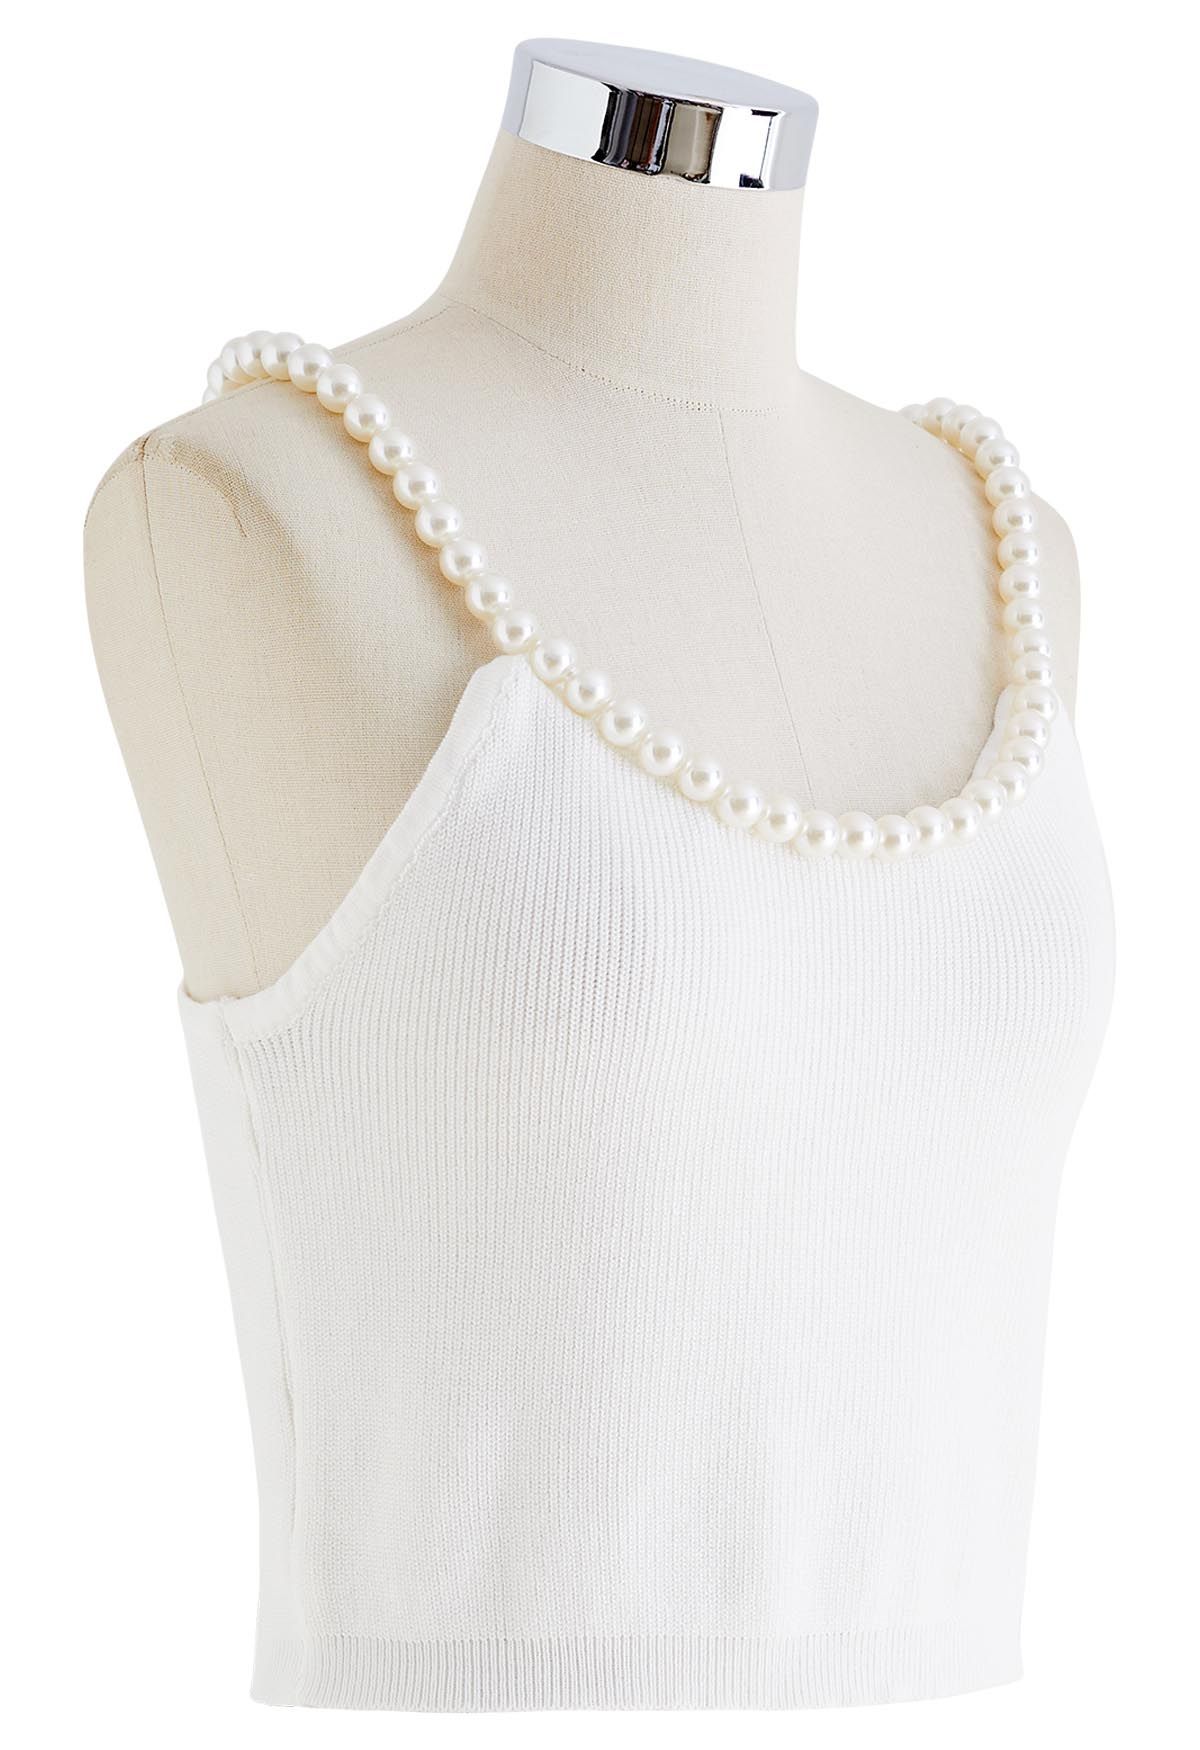 Strappy Knit Bra Top in White - Retro, Indie and Unique Fashion